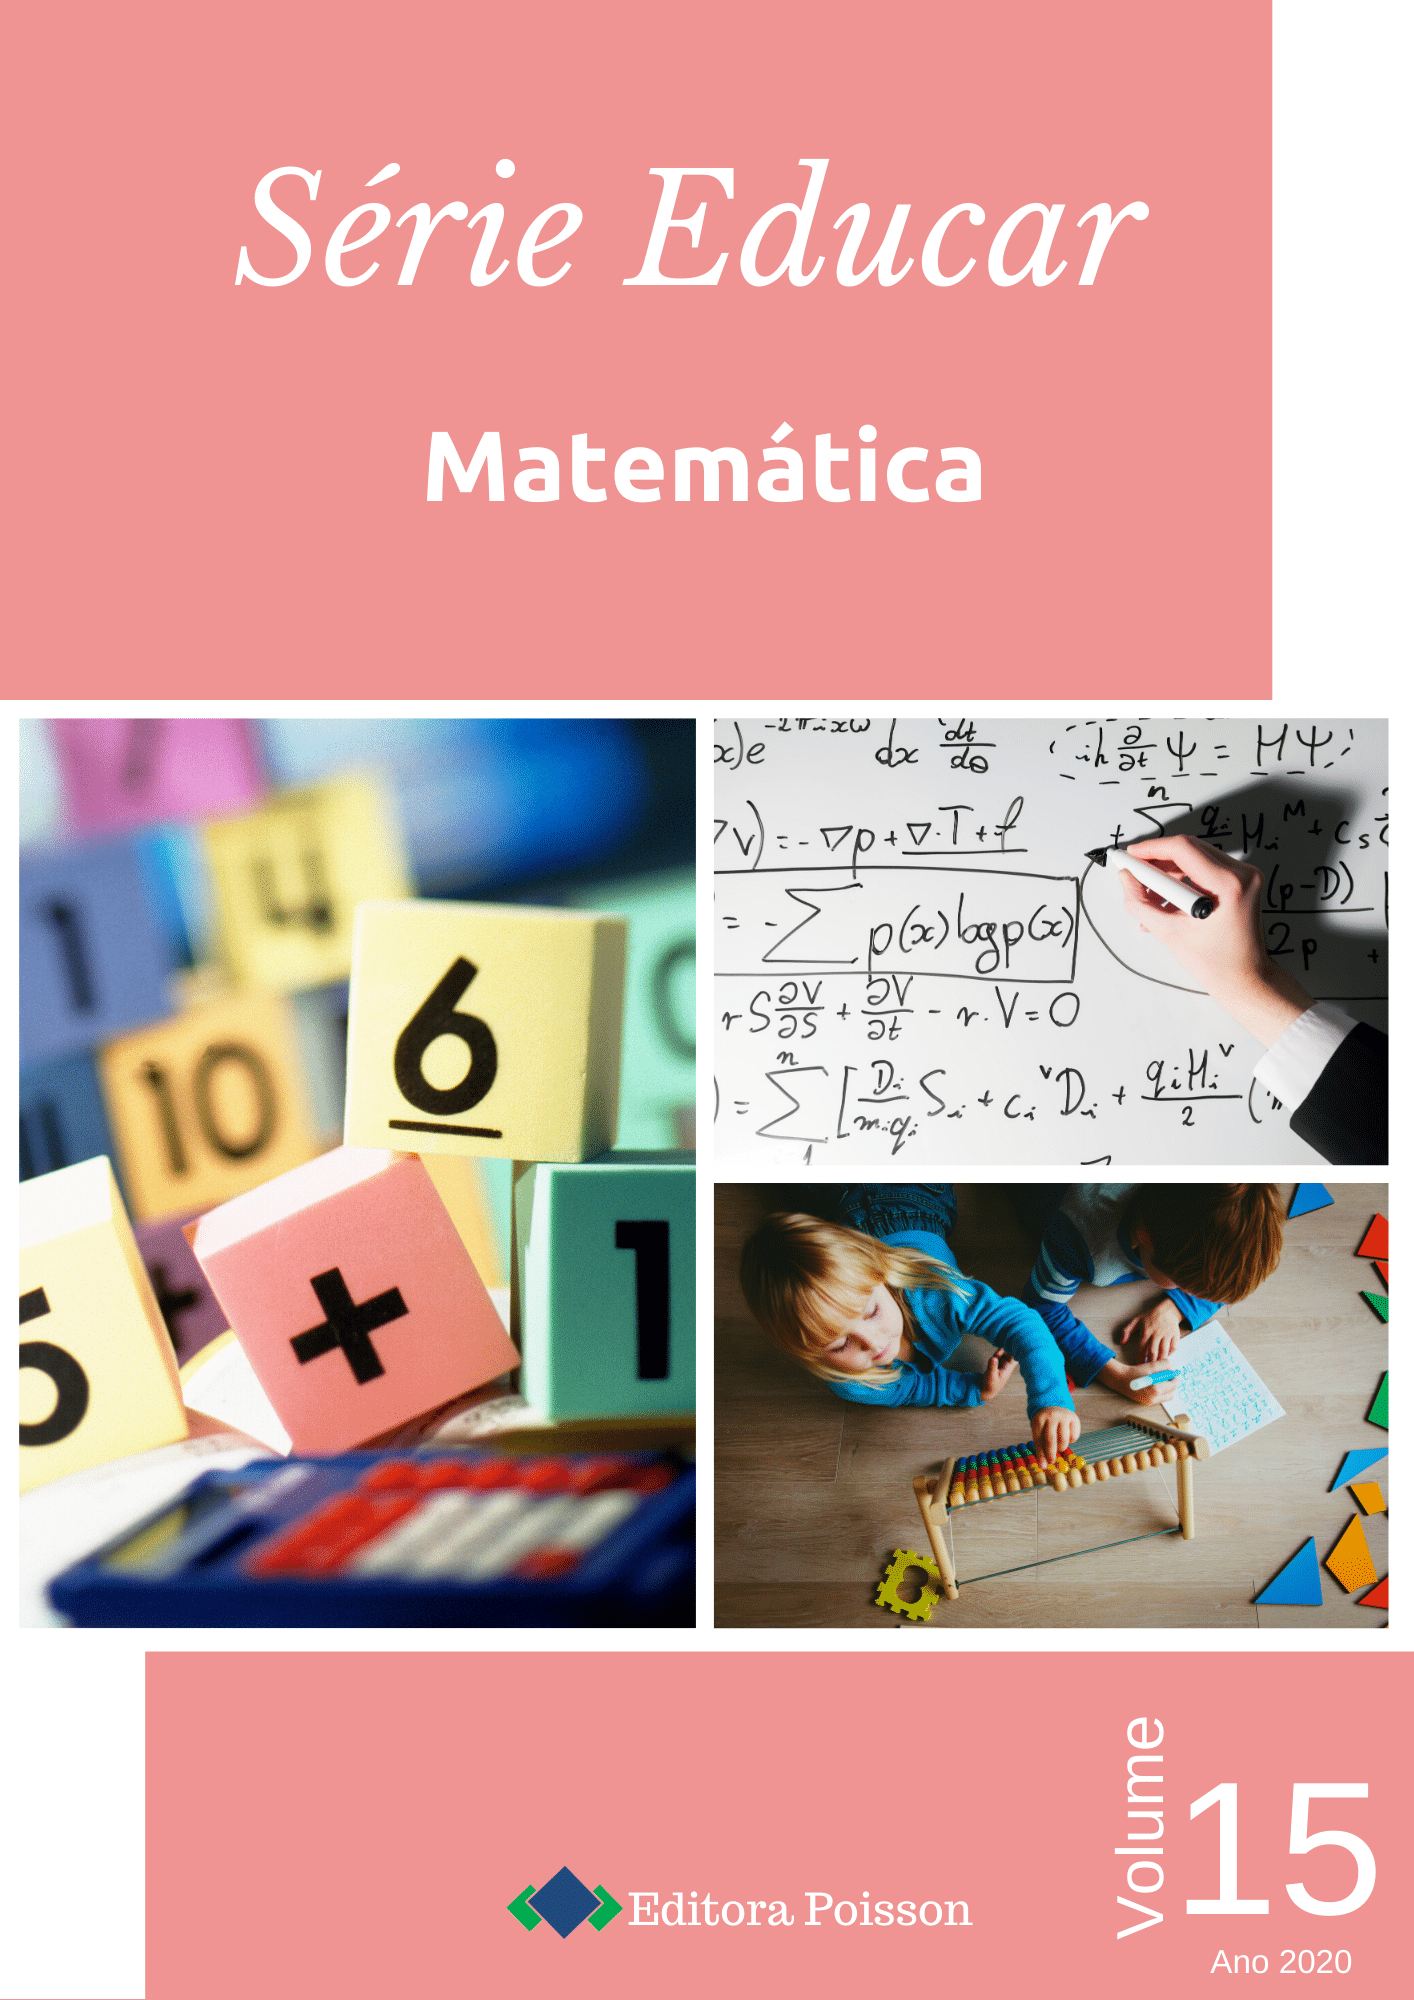 O lúdico na aprendizagem da Matemática: relato de experiência em